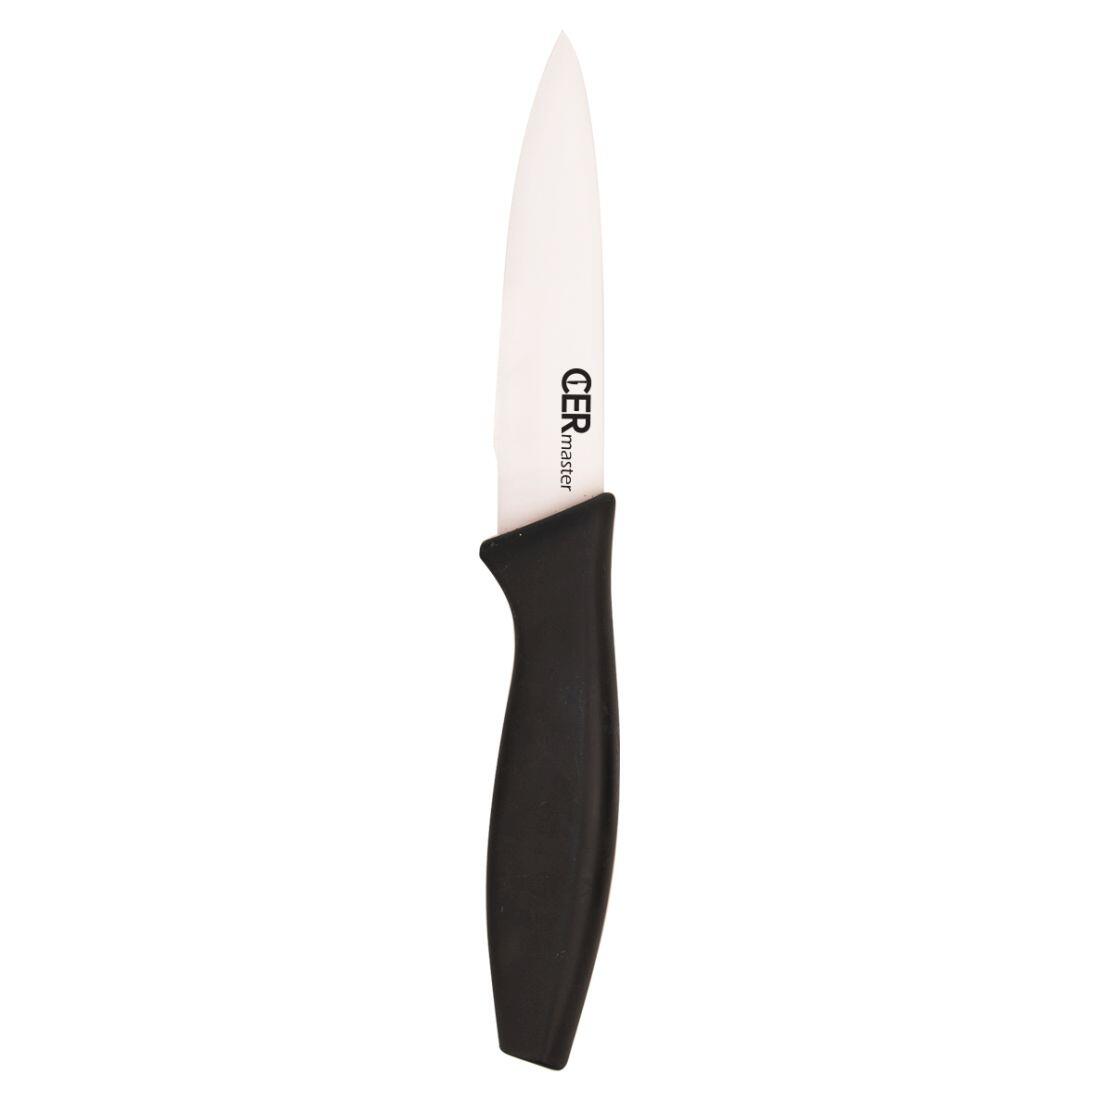 nůž keramický 10cm univerzální CERMASTER 0.05 Kg MAXMIX Sklad14 282161 12